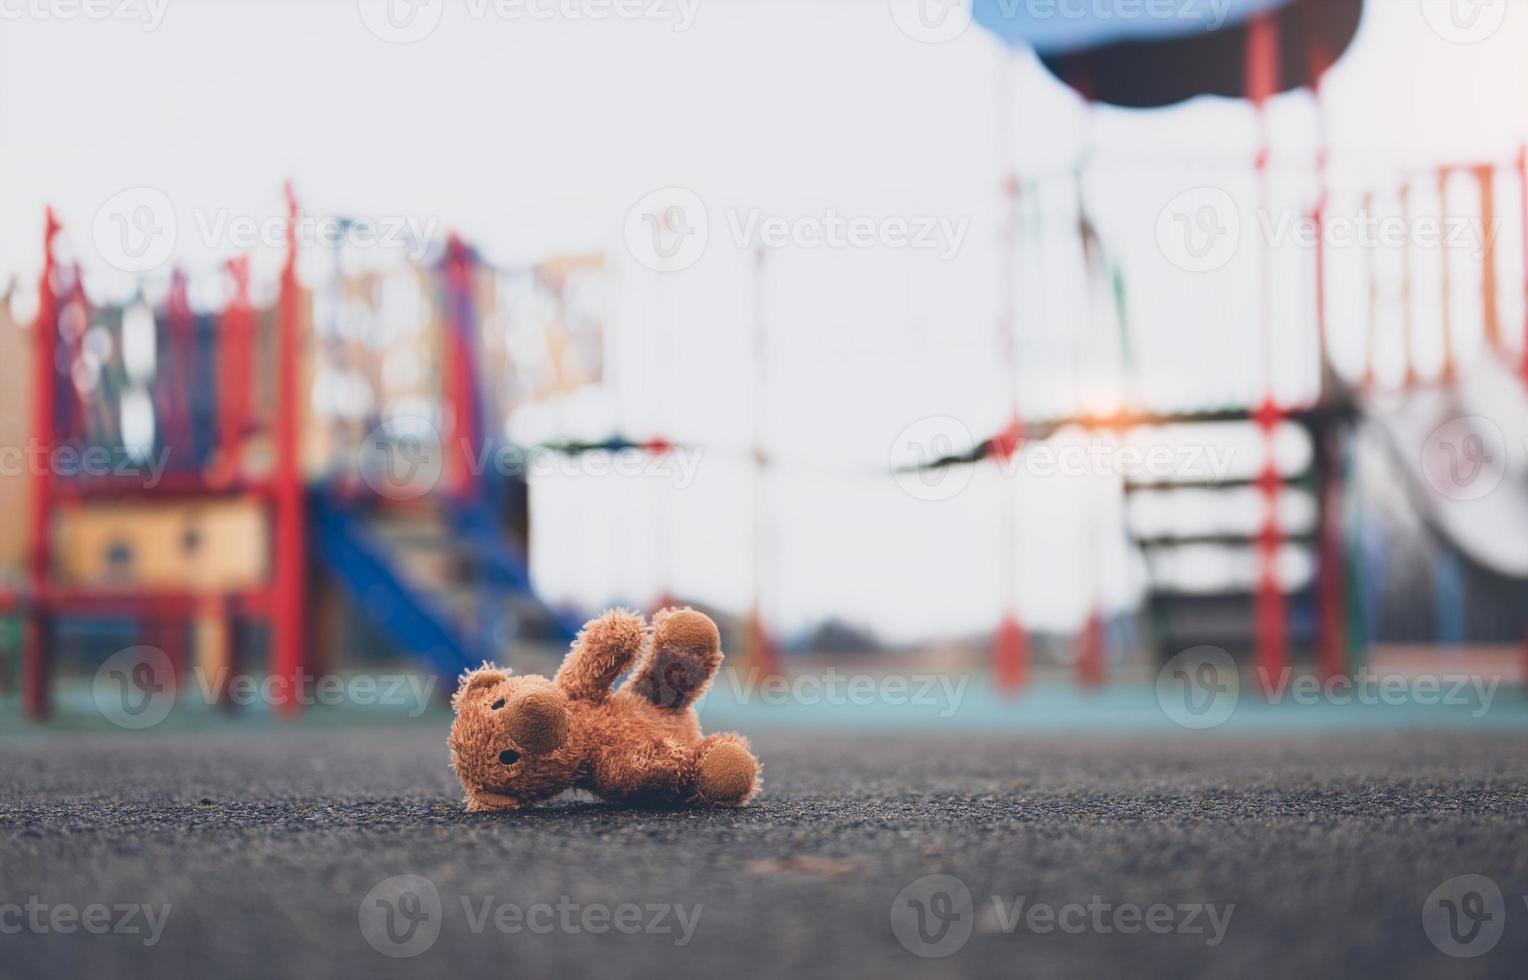 hat verloren Teddy Bär Spielzeug Lügen Don auf Spielplatz Fußboden im düster Tag, einsam und traurig braun Bär Puppe gelogen Nieder allein im das parken, verloren Spielzeug oder Einsamkeit Konzept, international fehlt Kinder Tag foto